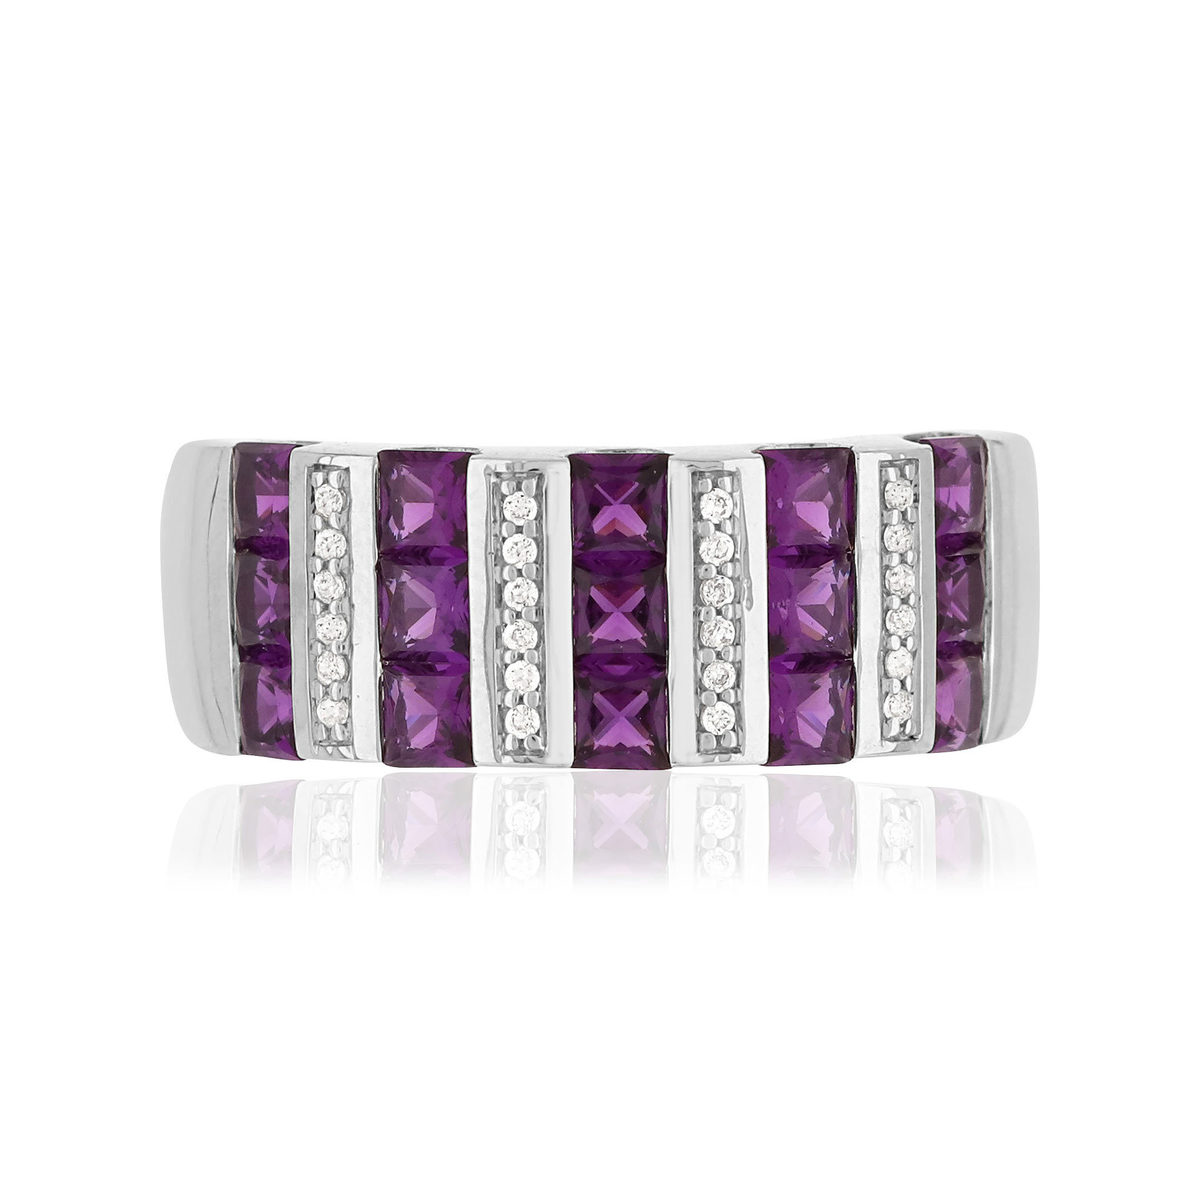 Bague argent 925 pierres imitation violettes carrées et zirconias - vue 3